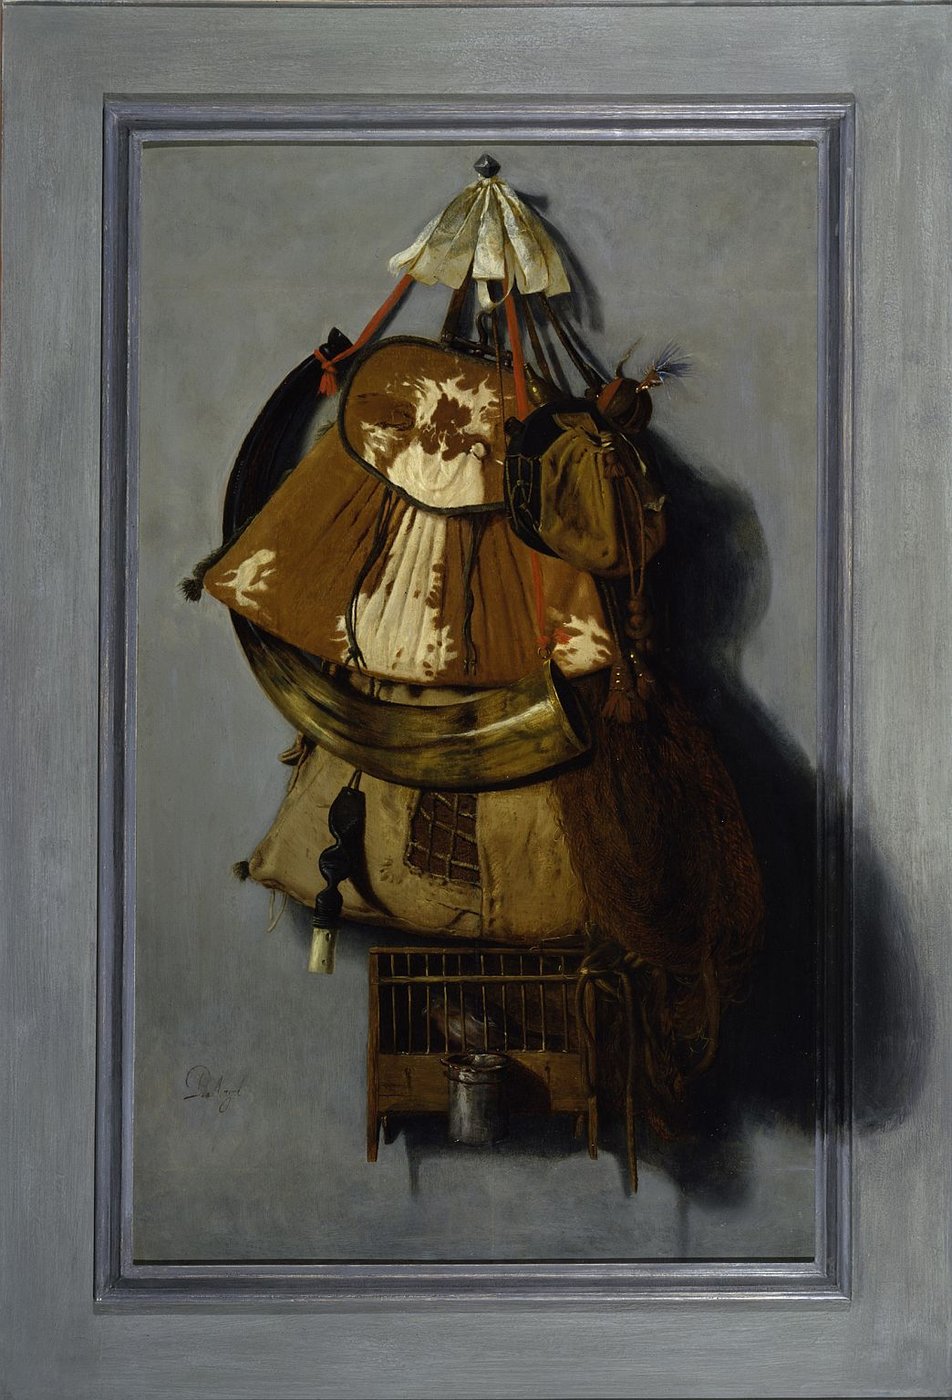 Philips Angel van Middelburg, Stillleben mit Jagdgeräten, Öl auf Holz © Gemäldegalerie der Akademie der bildenden Künste Wien